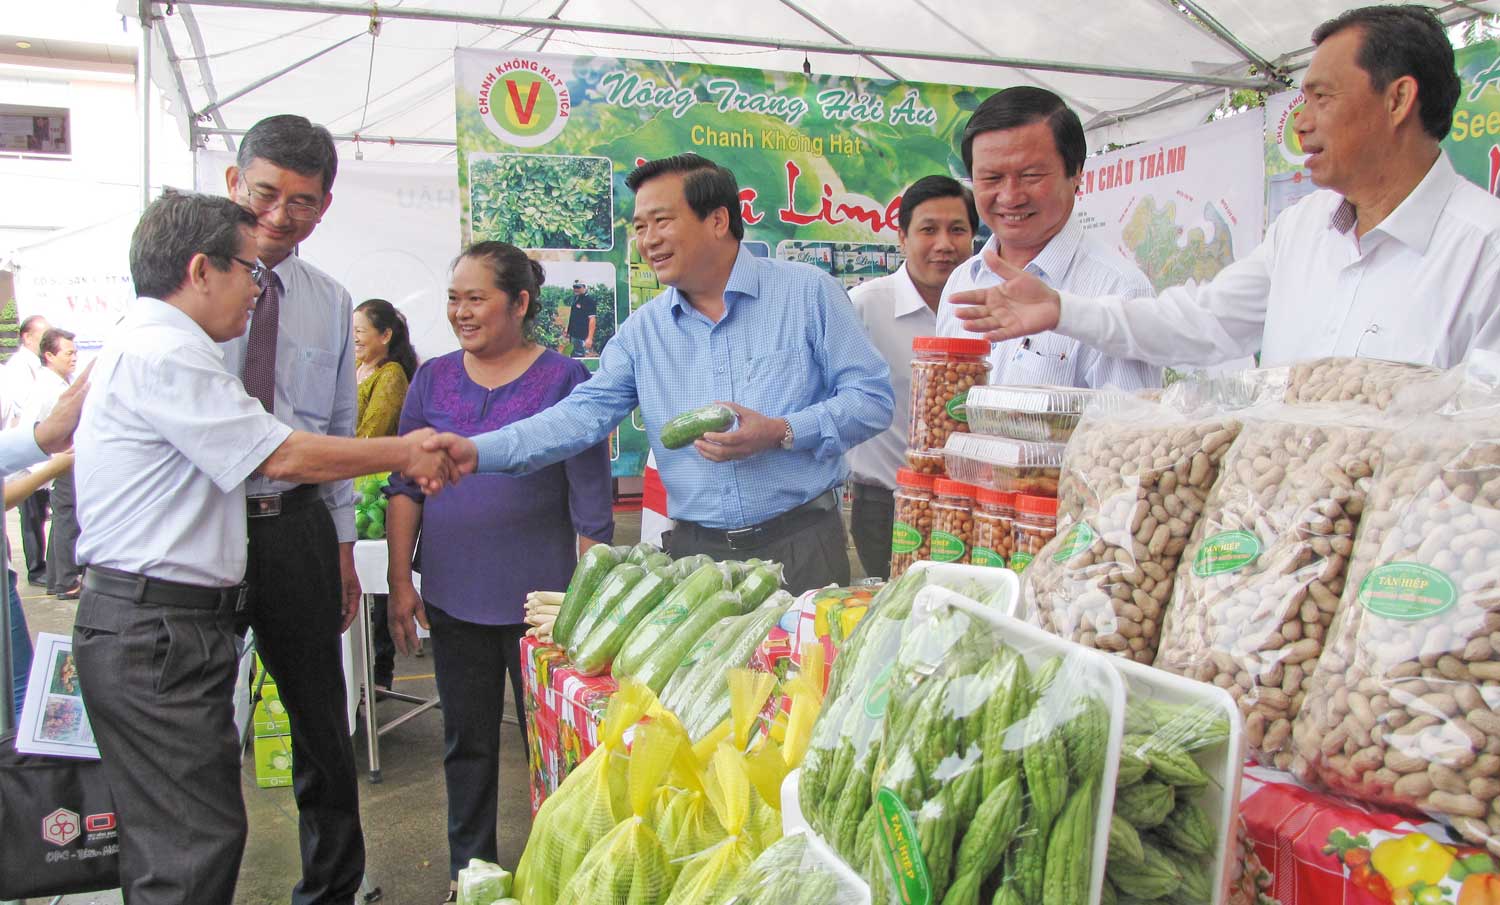 Lãnh đạo tỉnh tham gia kết nối giao thương nông sản với TP.HCM tại huyện Cần Giuộc năm 2016